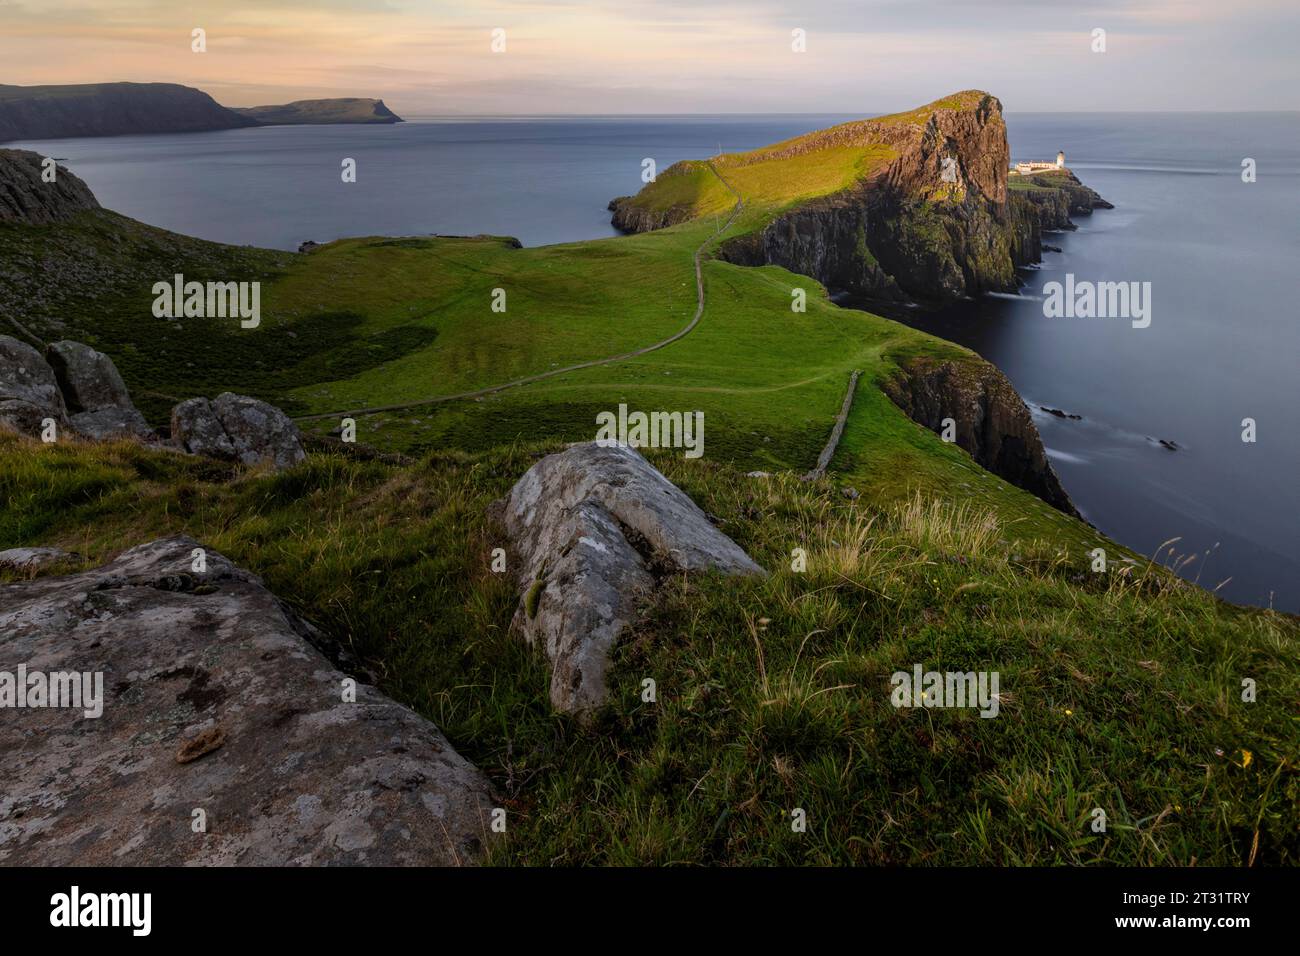 Neist point est un promontoire spectaculaire sur l'île de Skye, avec d'imposantes falaises, des formations rocheuses spectaculaires et un phare emblématique. Banque D'Images